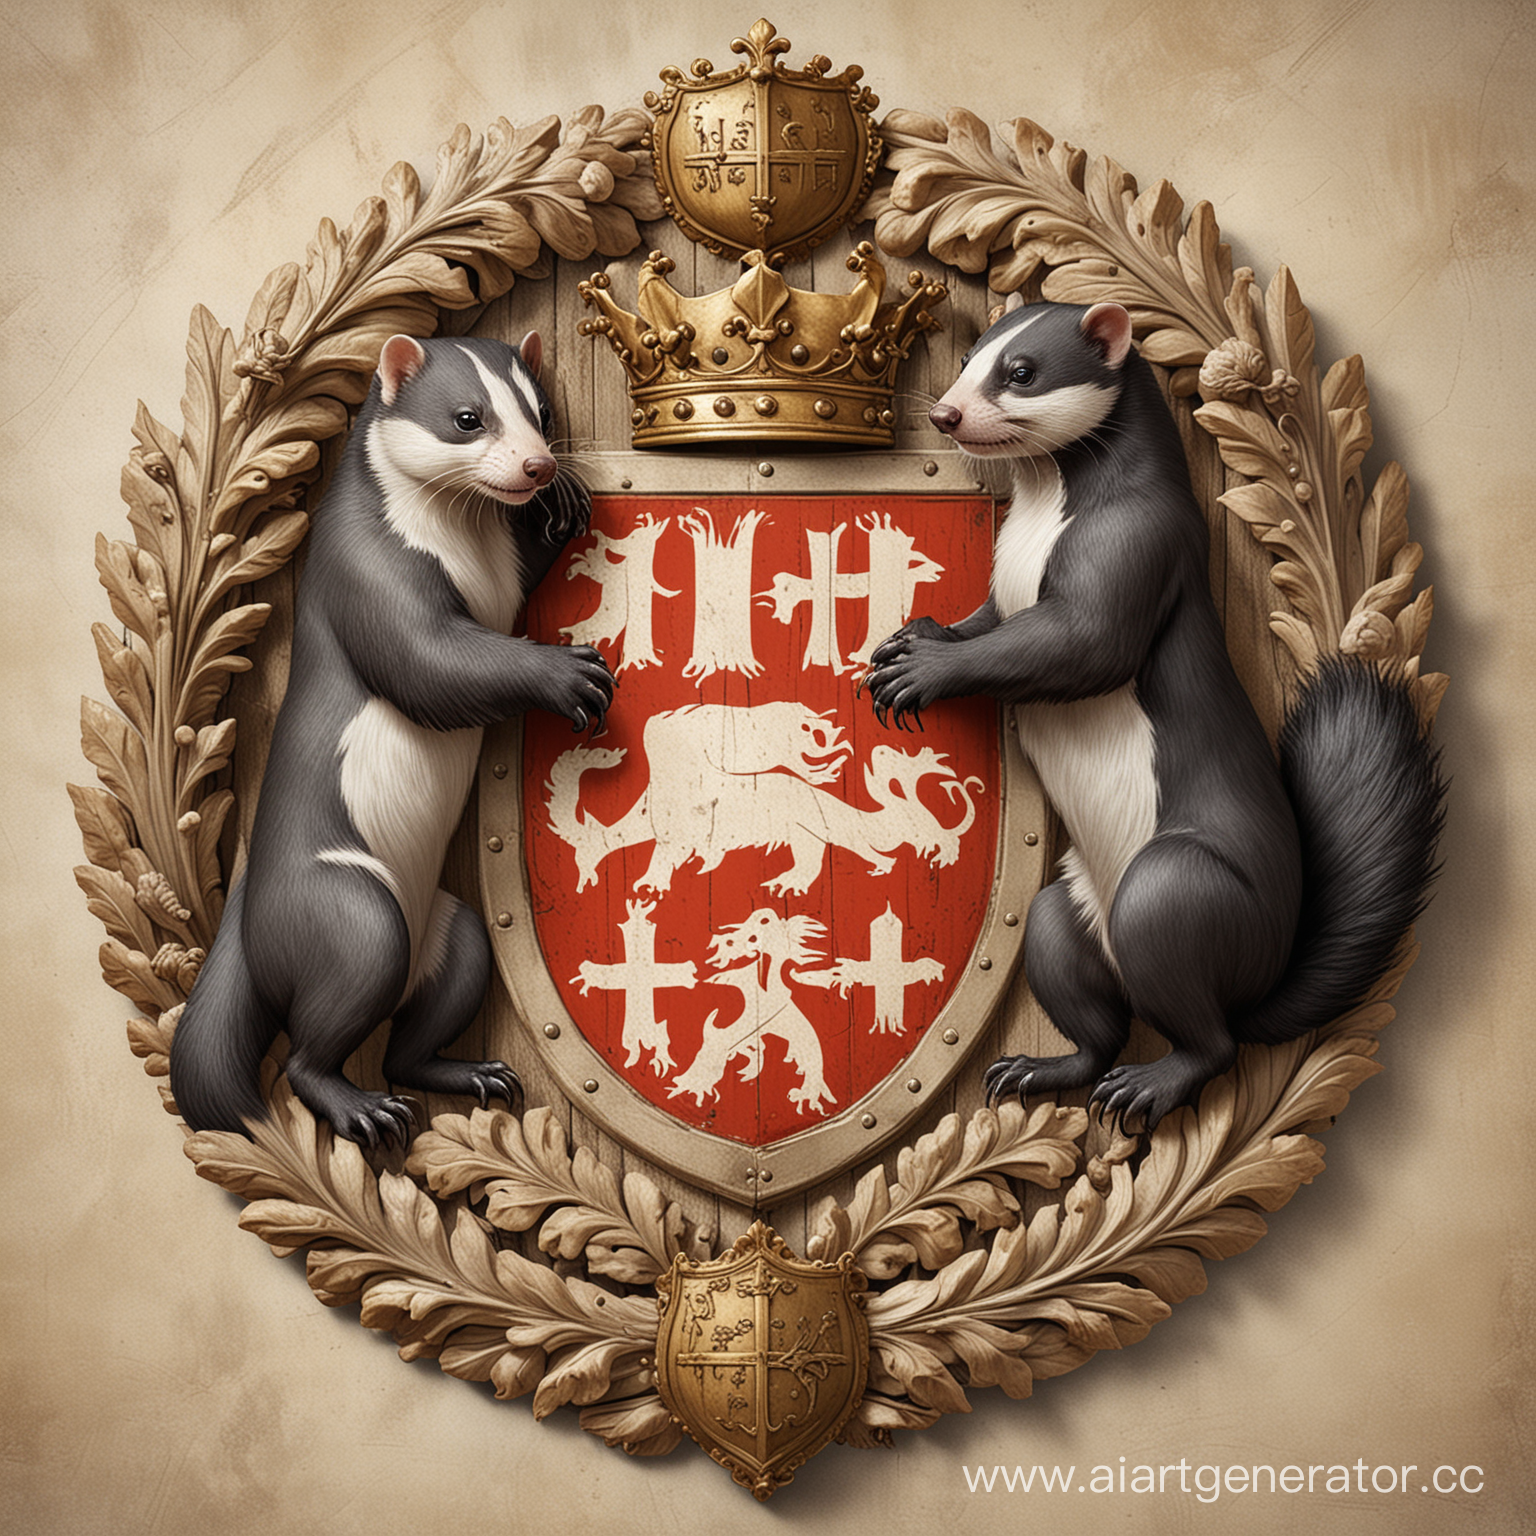 Изображение в виде средневекового герба, где изображены скунс и хорёк 